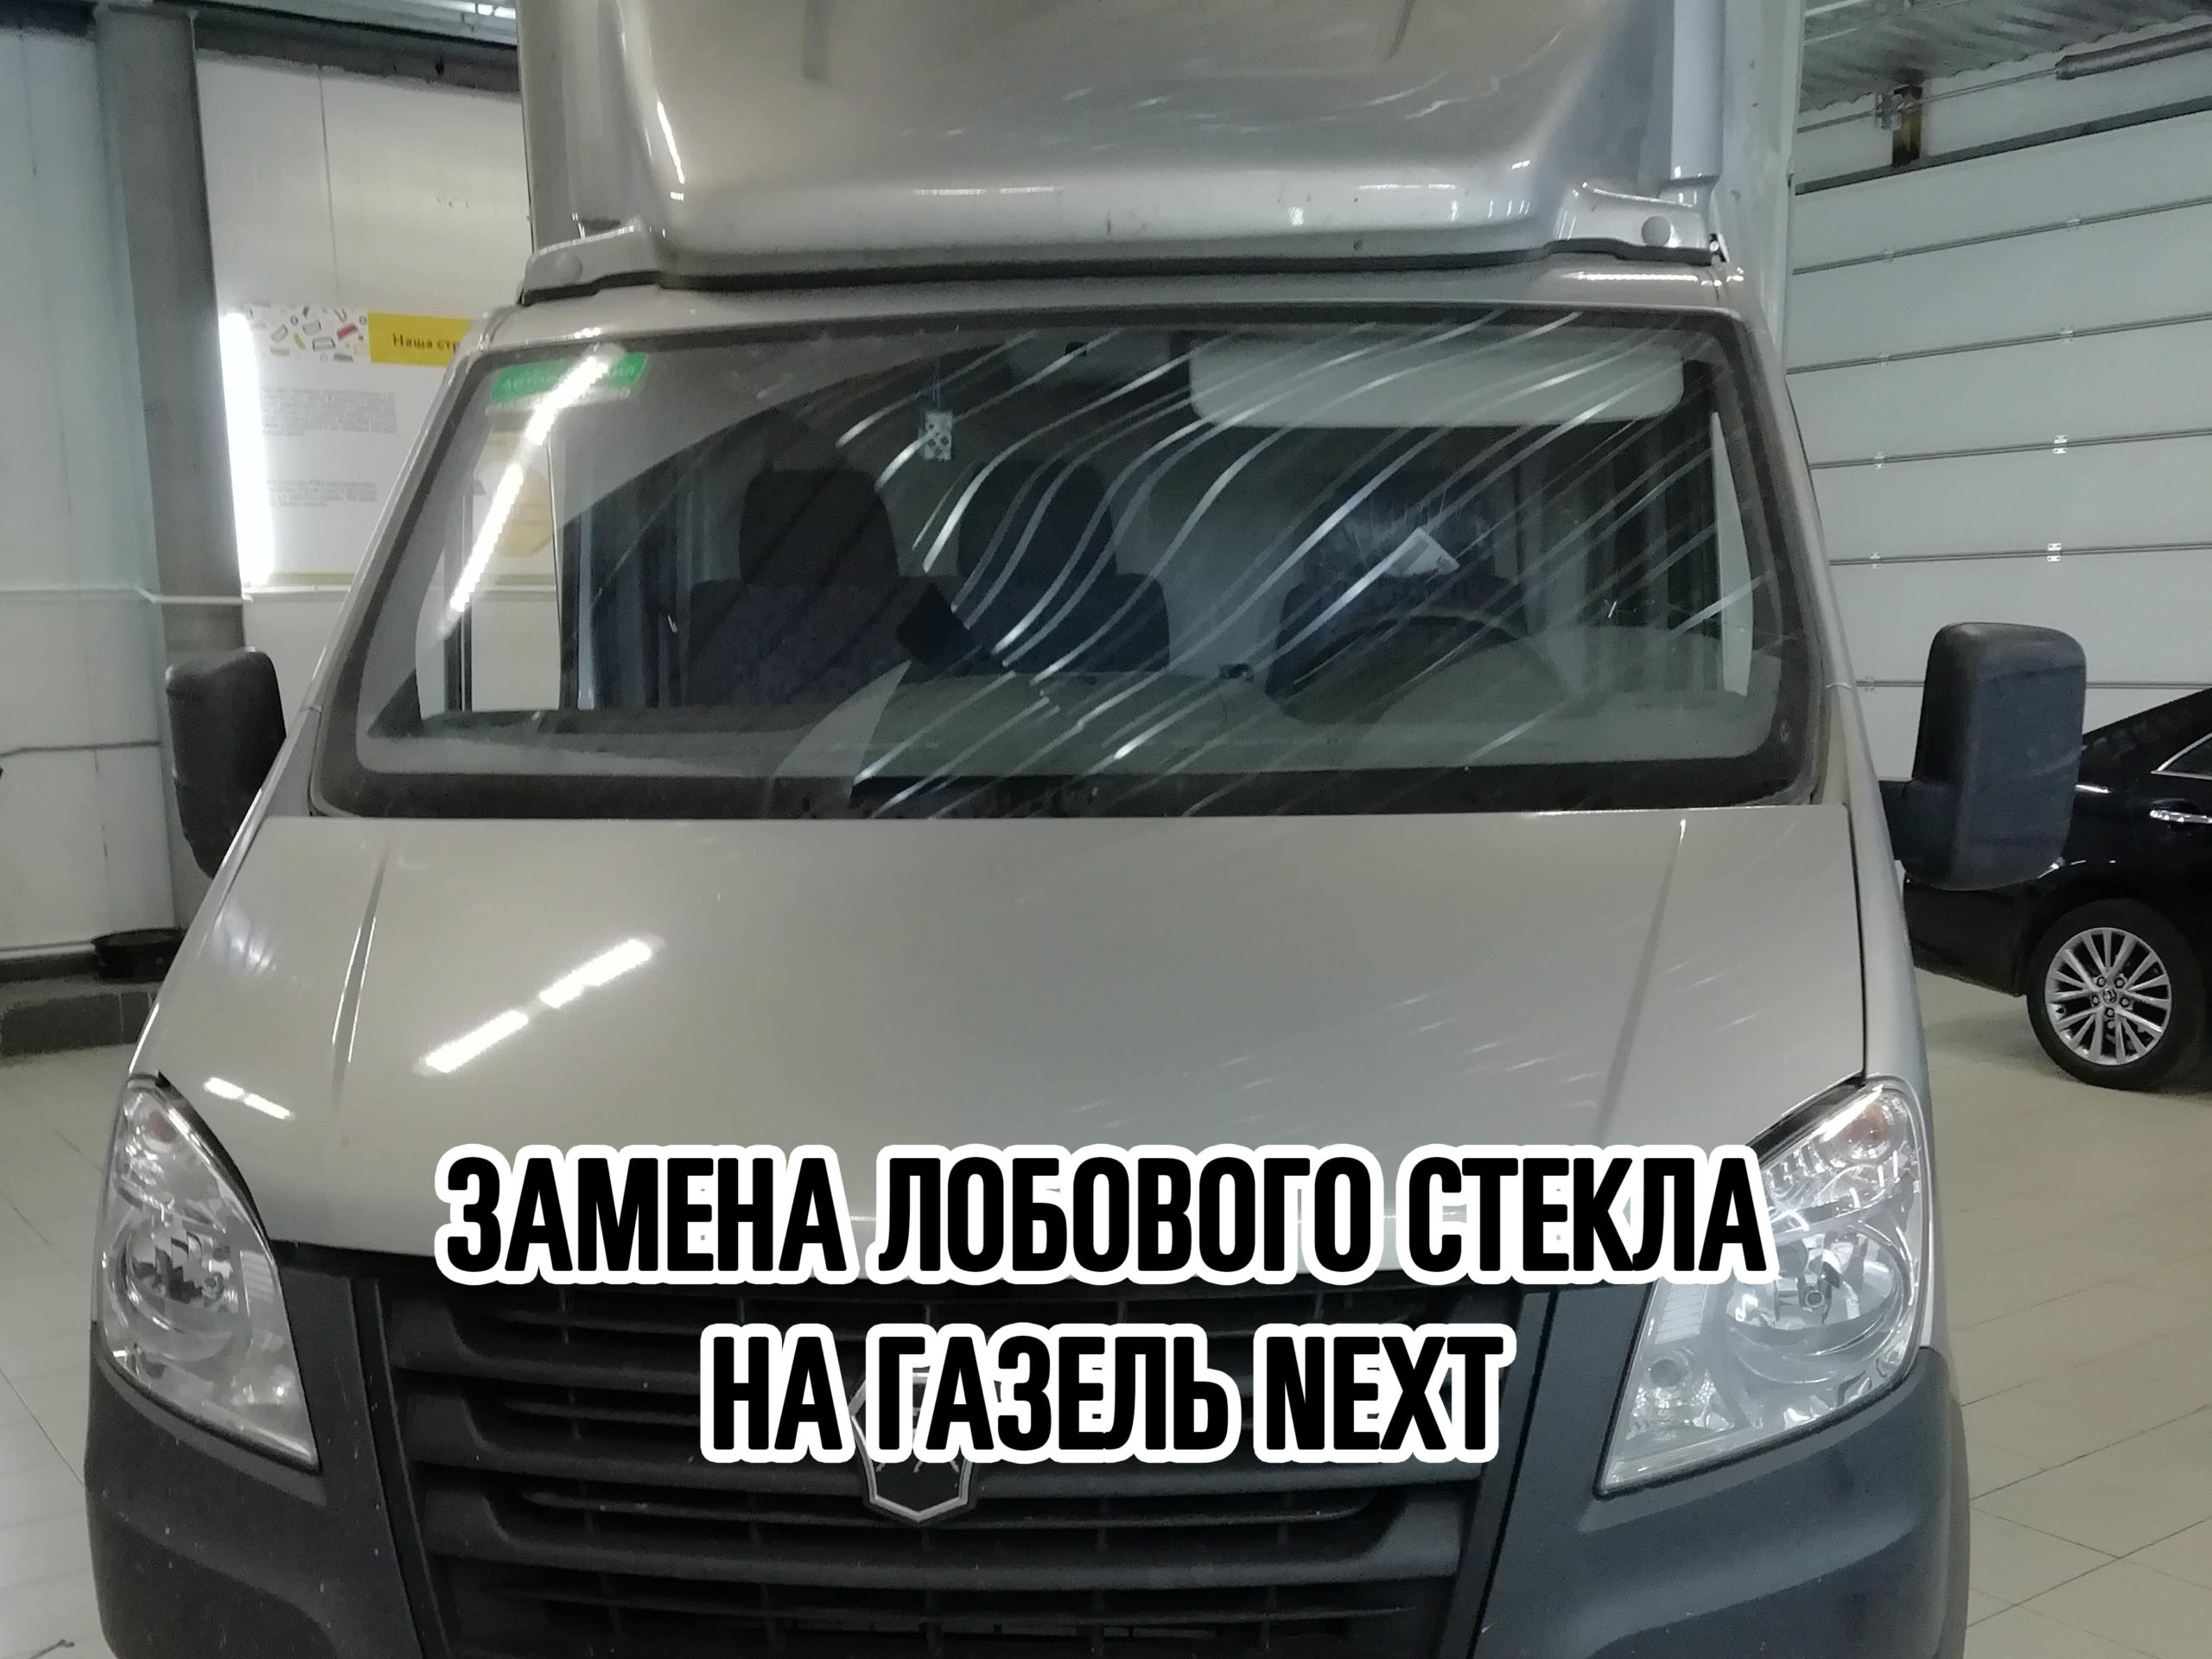 Замена лобового стекла на ГАЗель NEXT в Москве